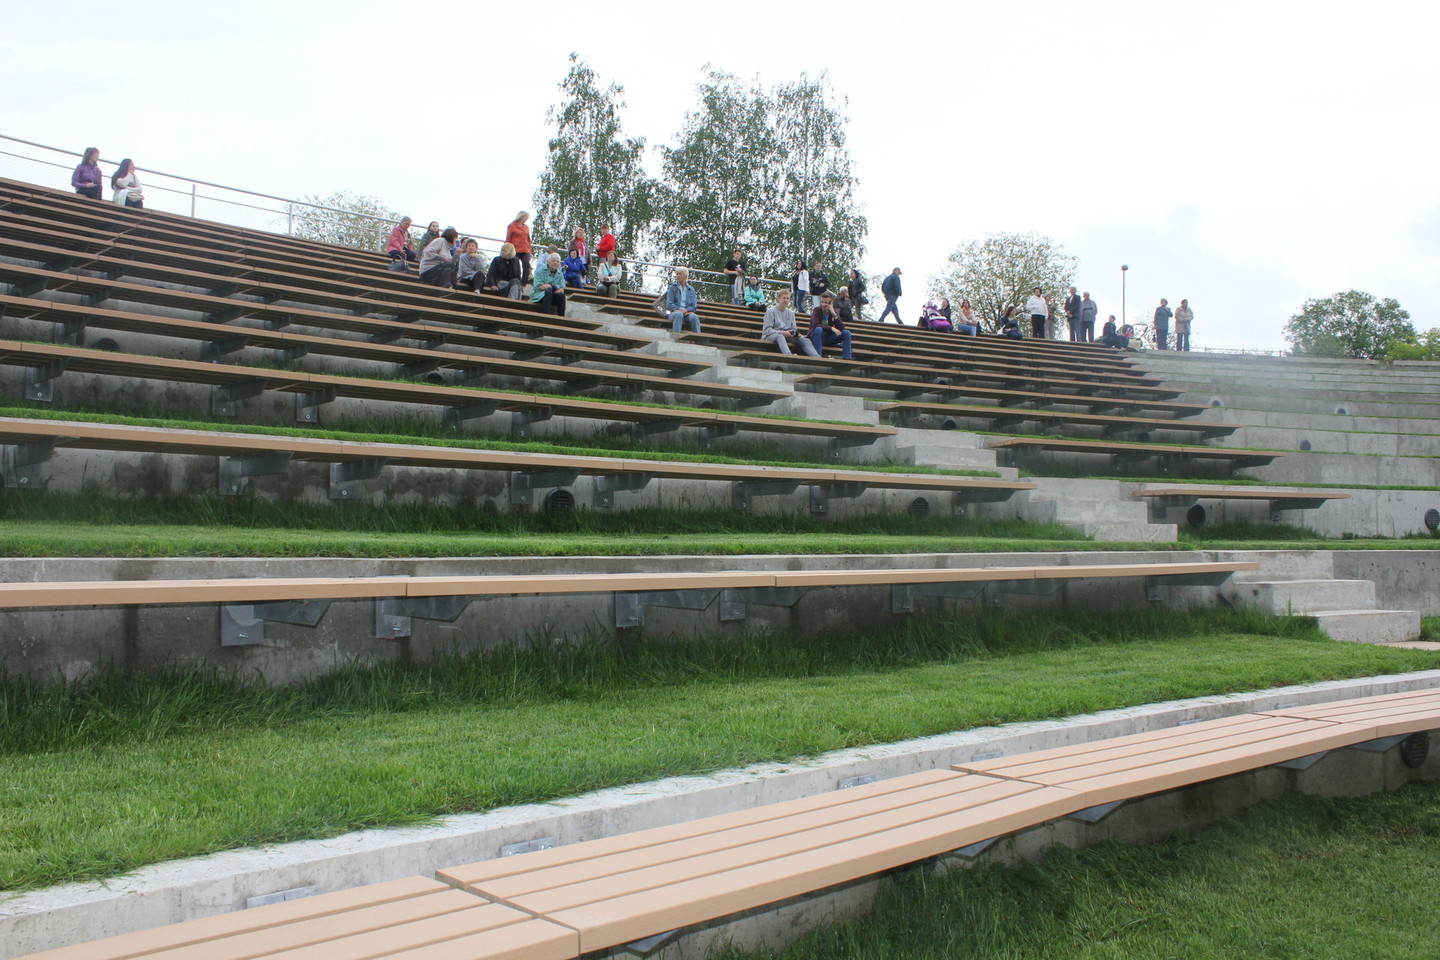 Amfiteatre įrengta apie 600-800 sėdimų vietų, įrengti 10 tūkst. sėdimų vietų slėnyje neįmanoma.<br>J.Vilčinskienės nuotr.